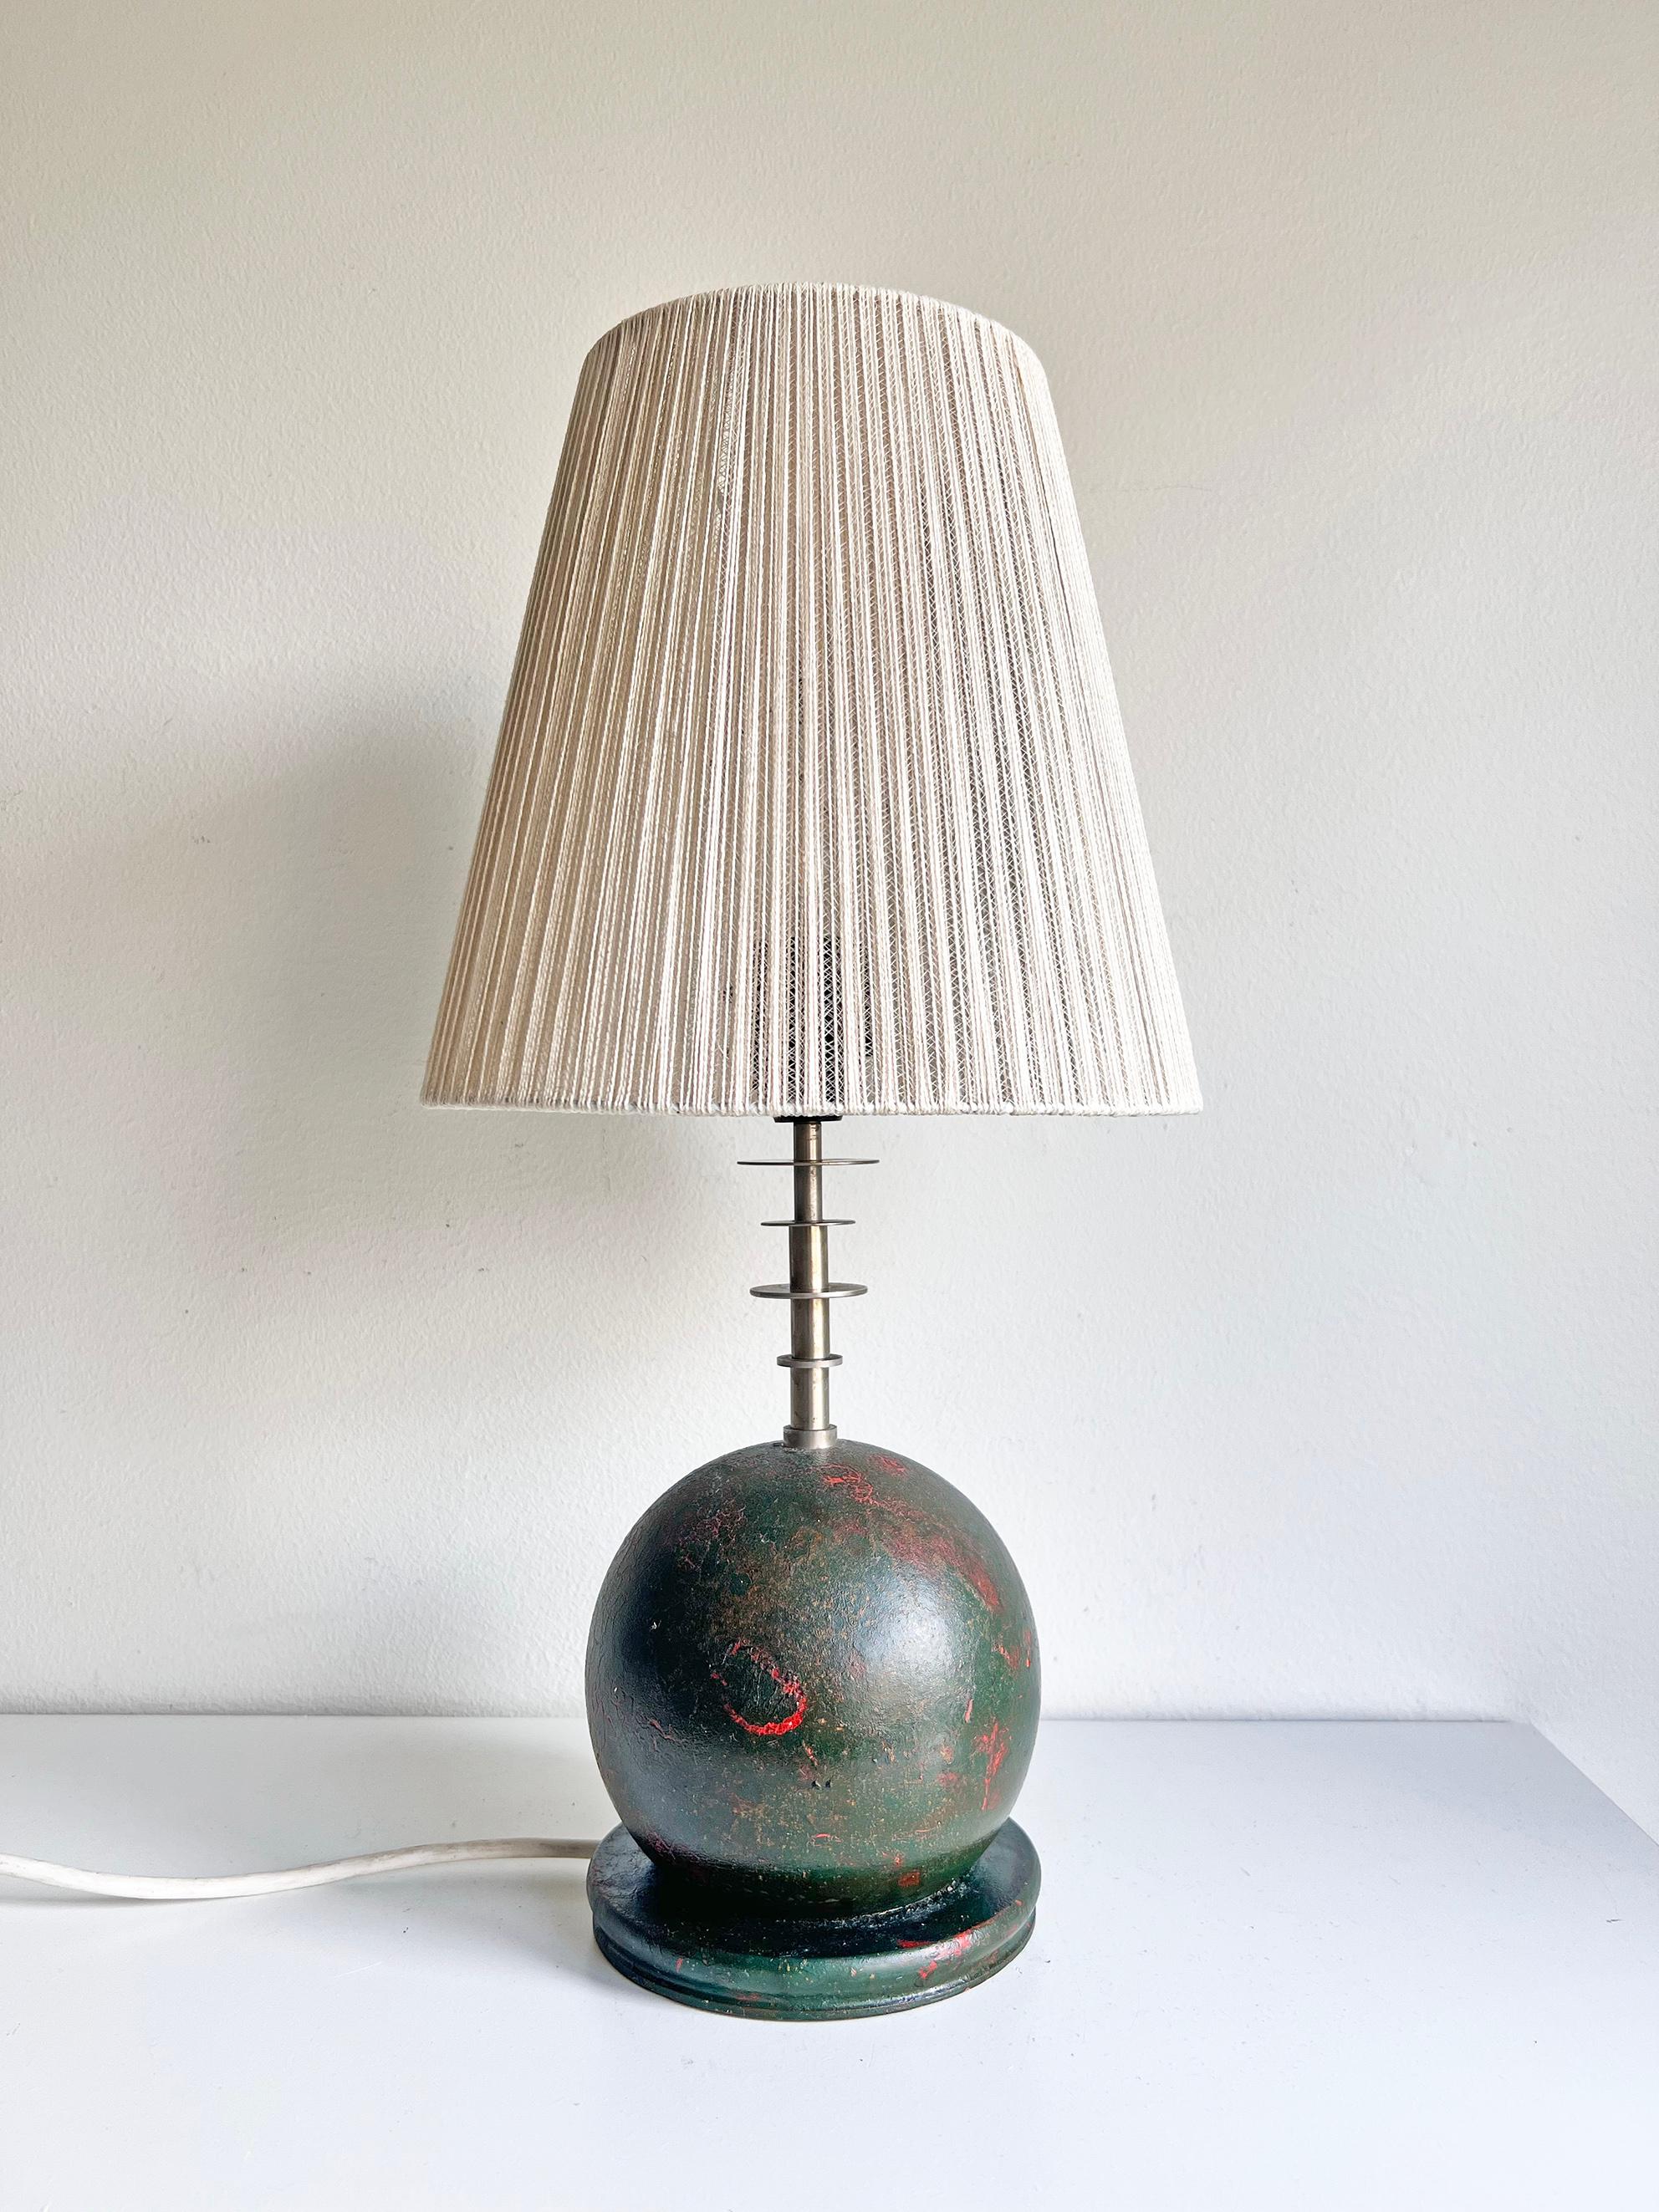 Très rare lampe de table moderne suédoise par Olof Heijke, ca 1930's. Un bon exemple de la période suédoise 